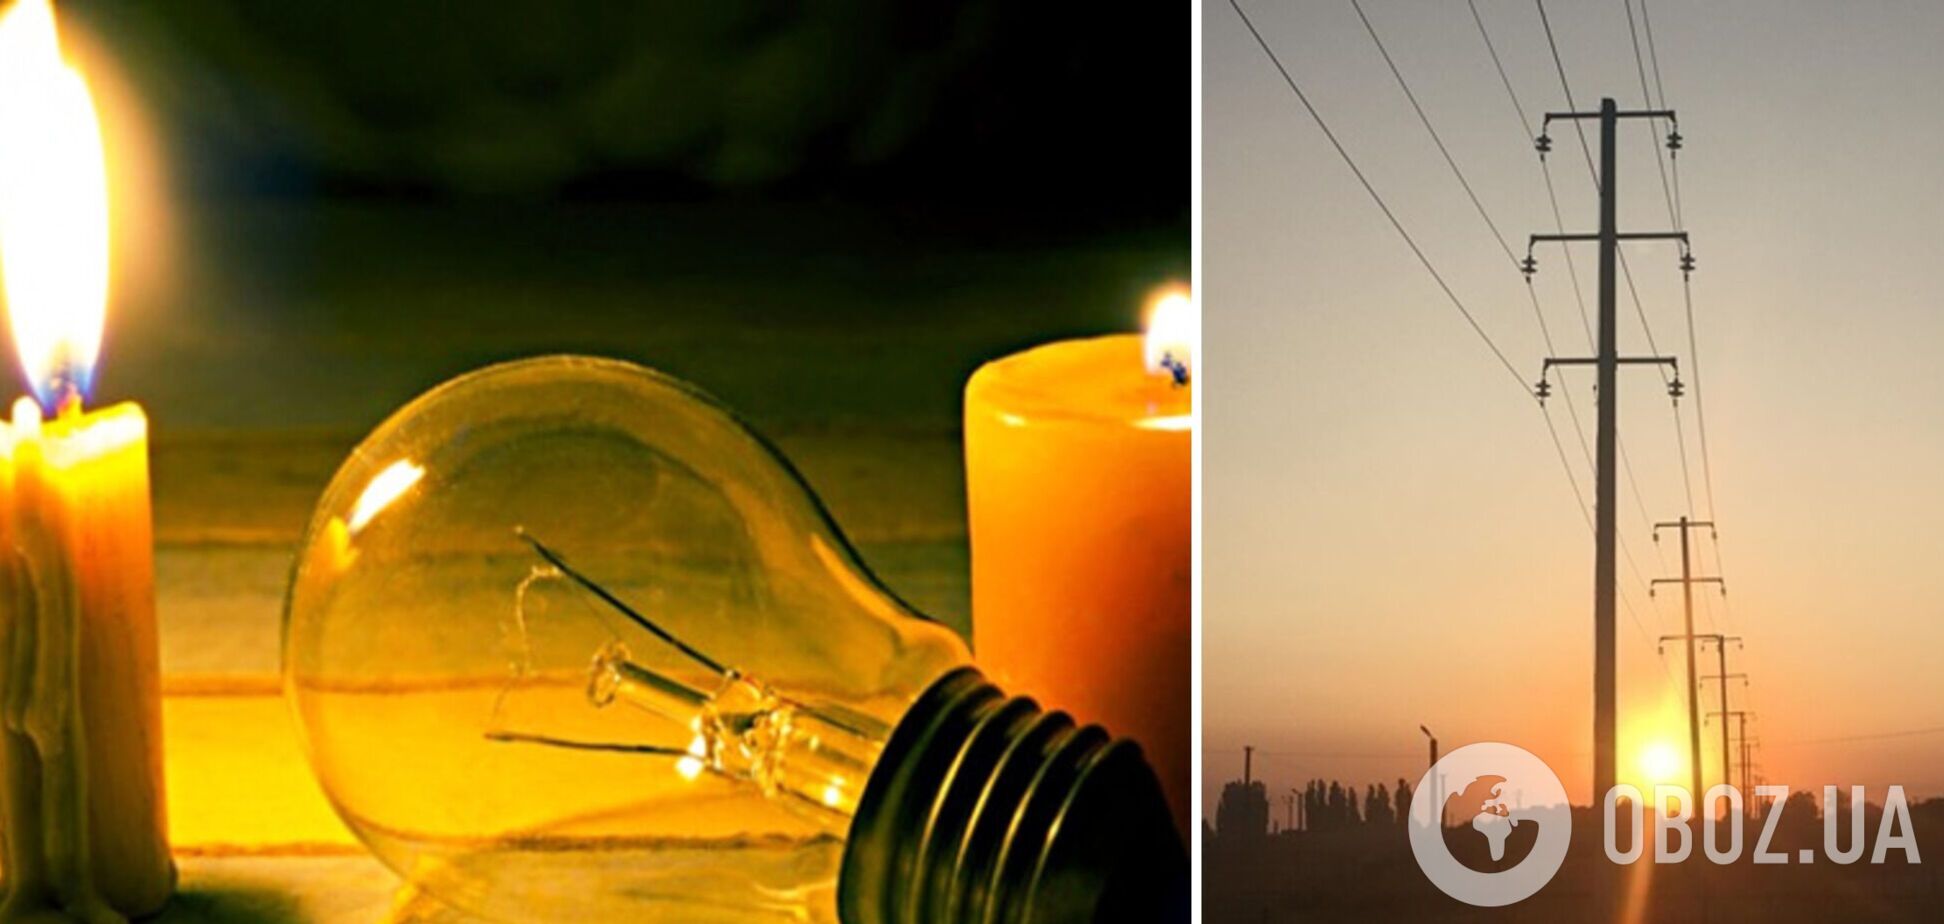 Дефицит мощности растет, электричество в Украине будут отключать целые сутки